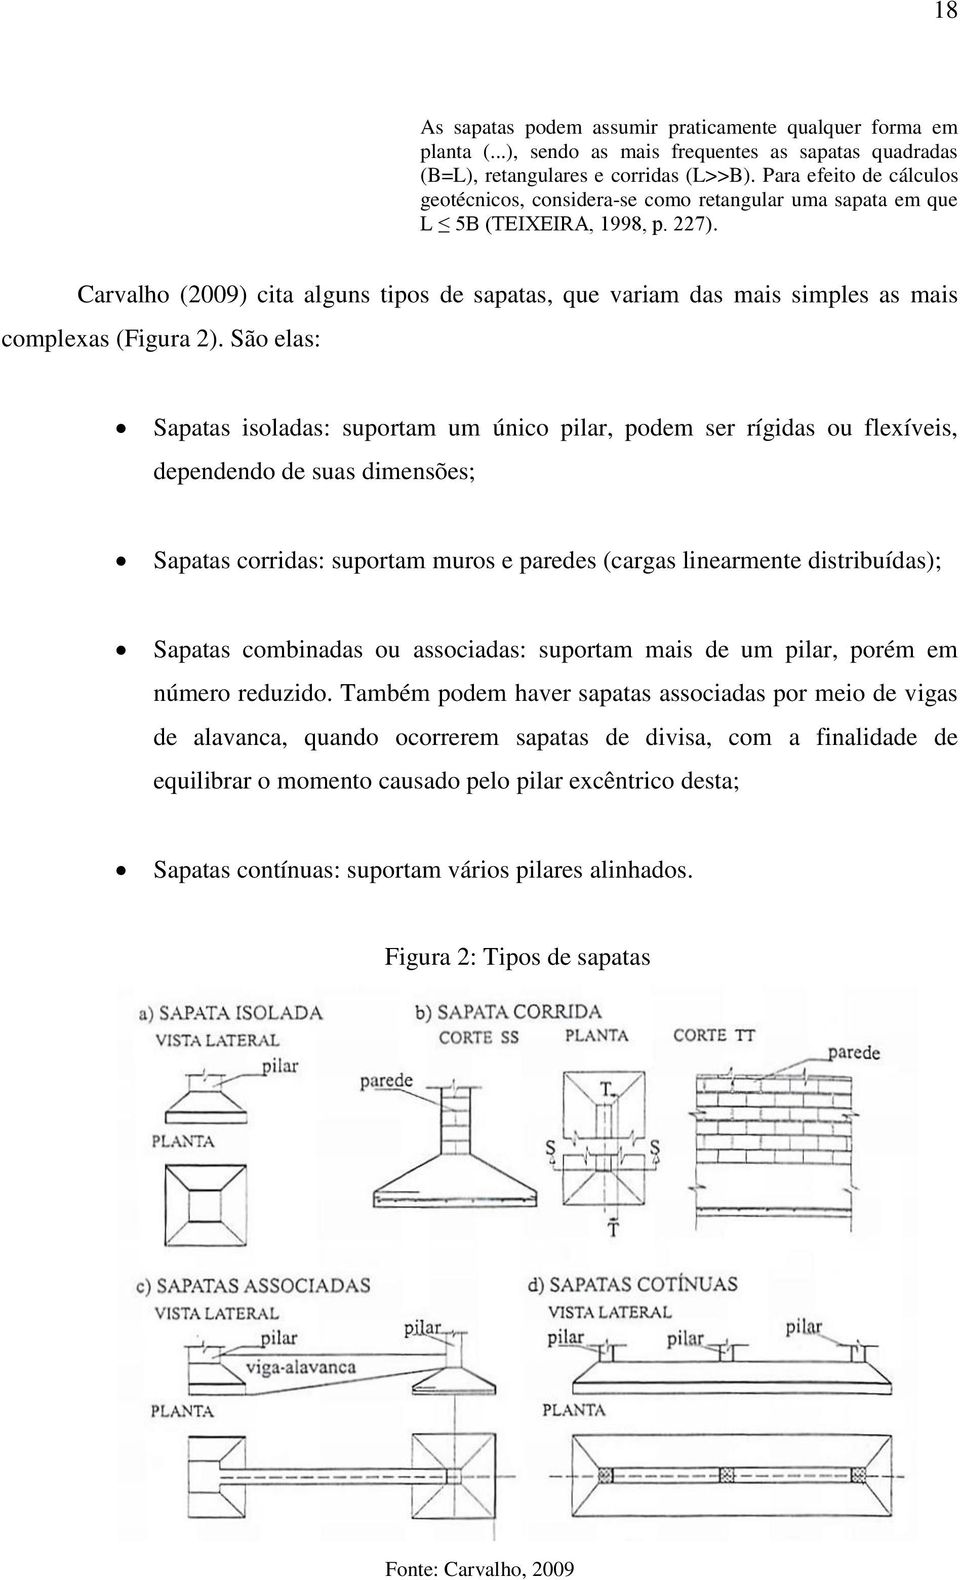 Carvalho (2009) cita alguns tipos de sapatas, que variam das mais simples as mais complexas (Figura 2).